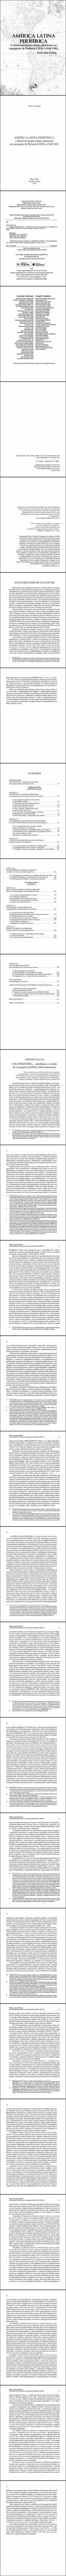 AMÉRICA LATINA PERIFÉRICA: <br> O DESENVOLVIMENTO LATINO-AMERICANO NA CONCEPÇÃO DE PREBISCH/CEPAL (1948/1981)